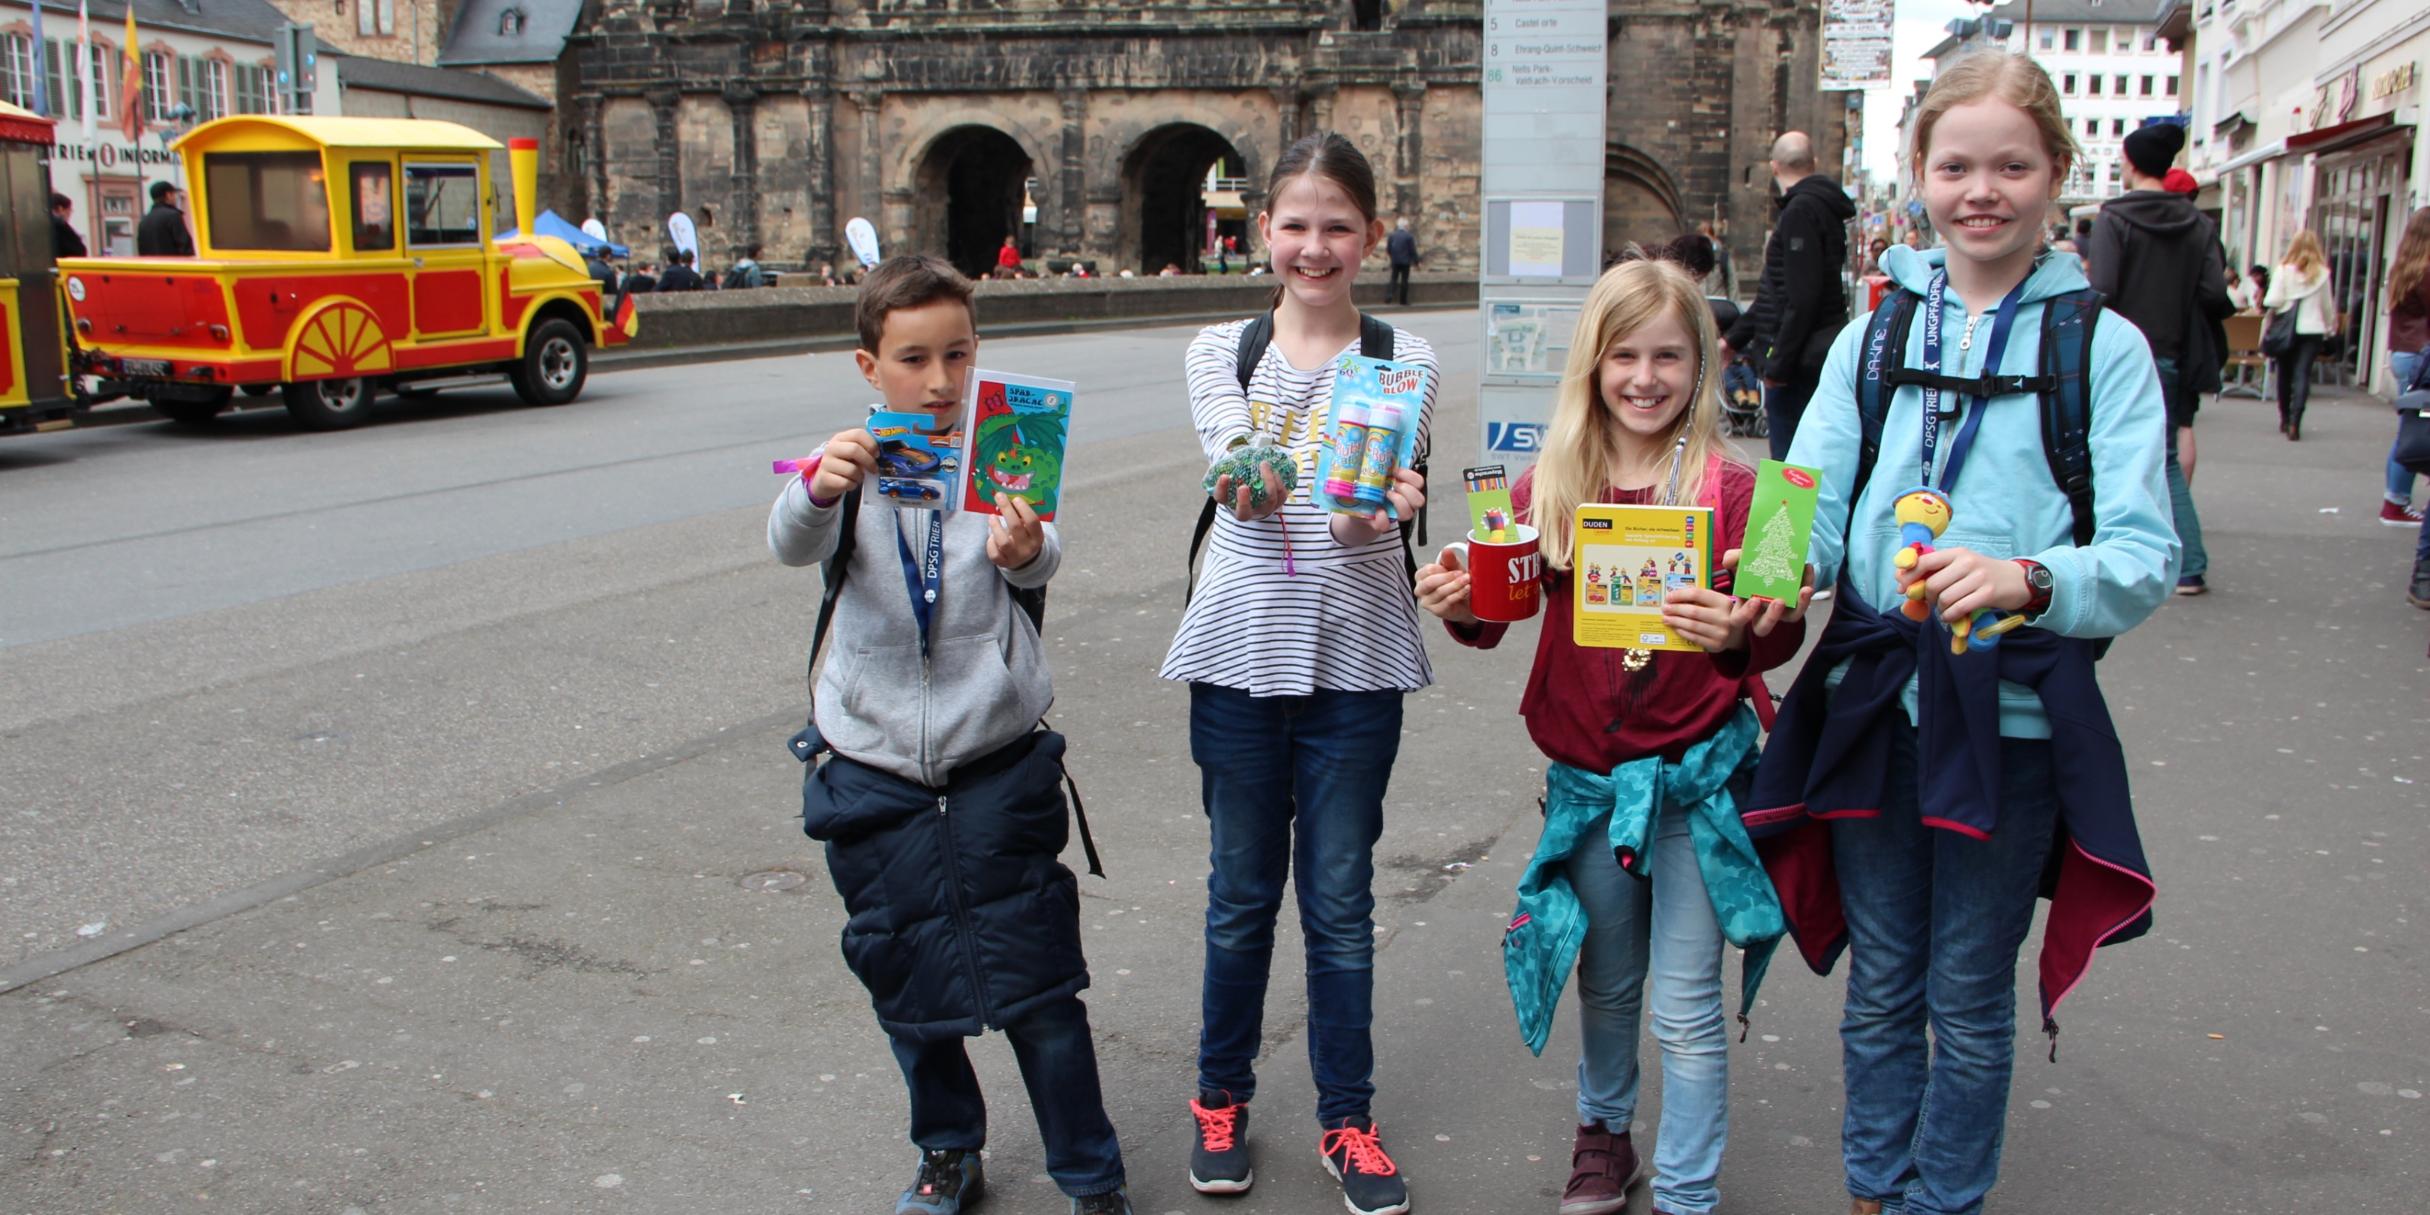 Jonas, Laura, Lara und Kaja zeigen stolz ihre Tausch-Errungenschaften. Insgesamt war die PG Welschbillig mit zehn Messdienern beim Jugendtag in Trier.